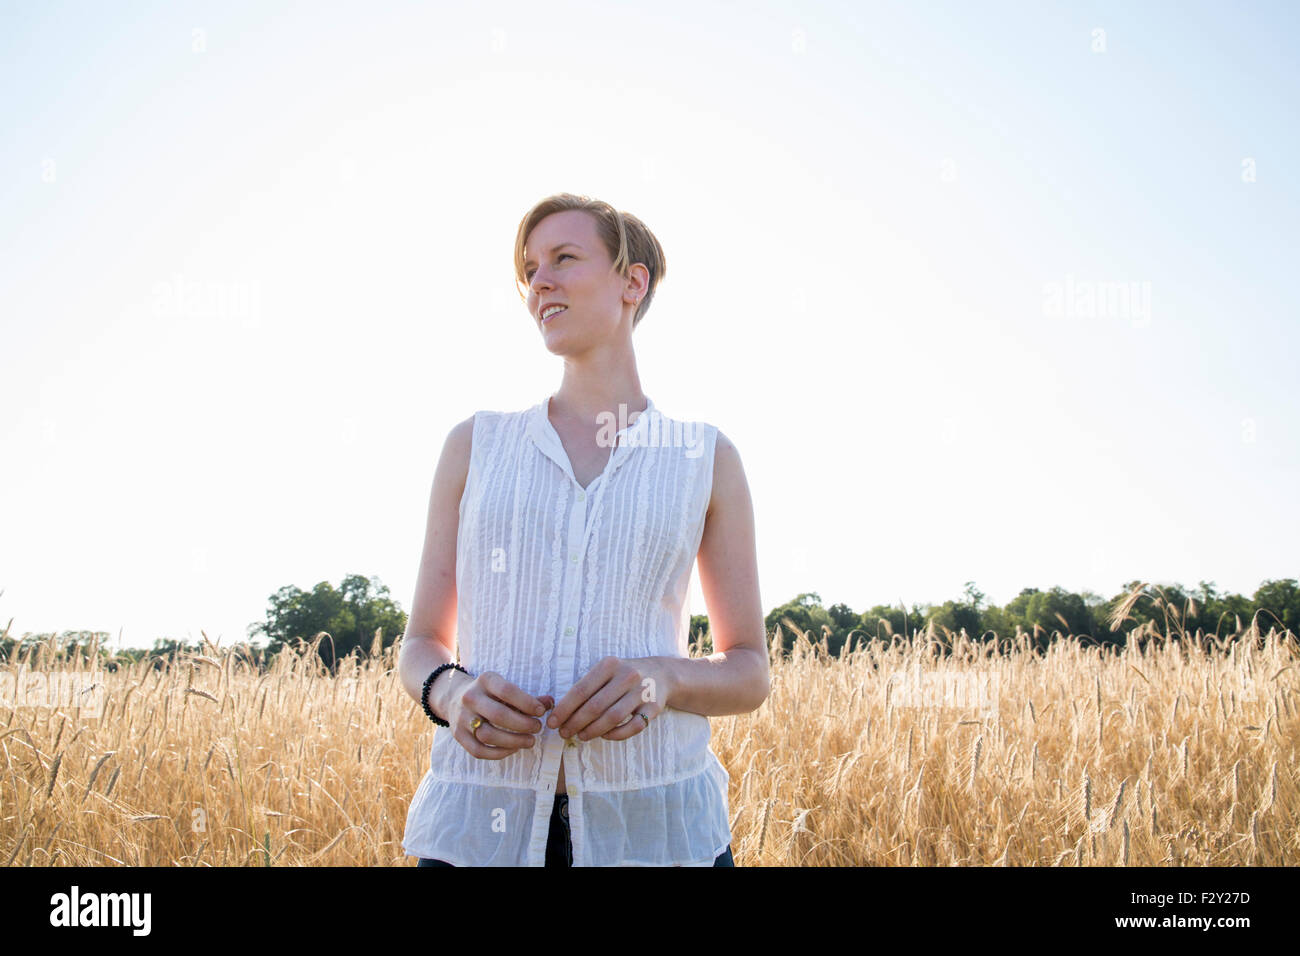 Halblängen Porträt einer jungen Frau, stehend in einem Maisfeld. Stockfoto